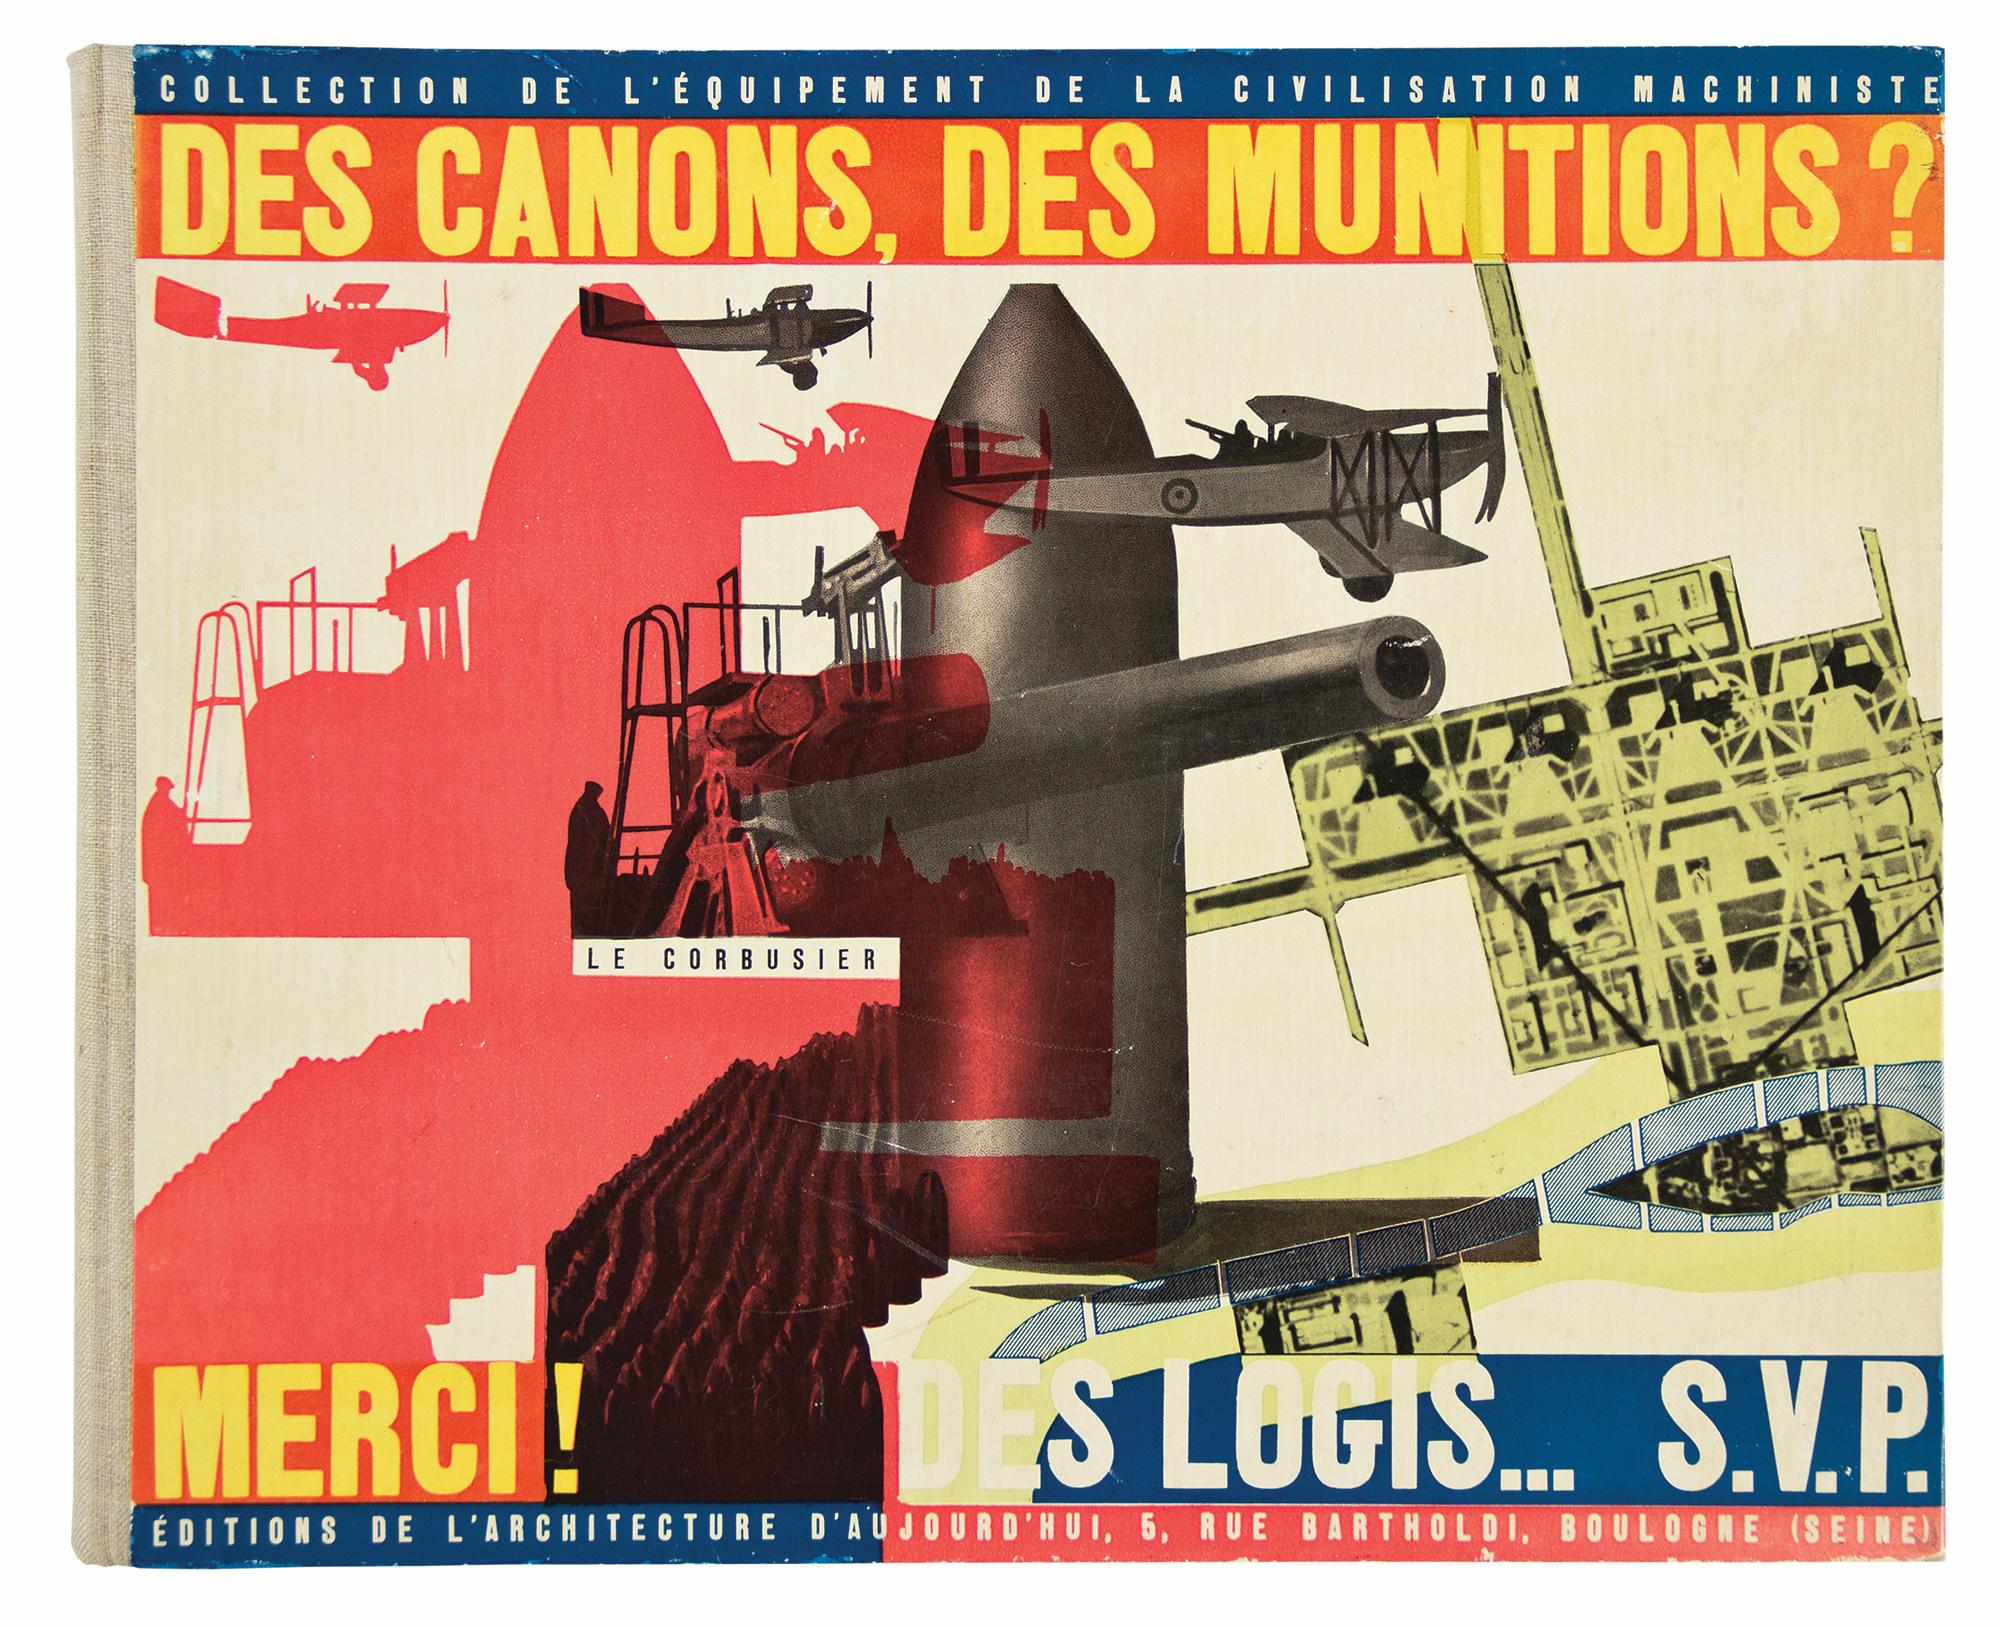  Des Canons, des Munitions? - Art by Le Corbusier